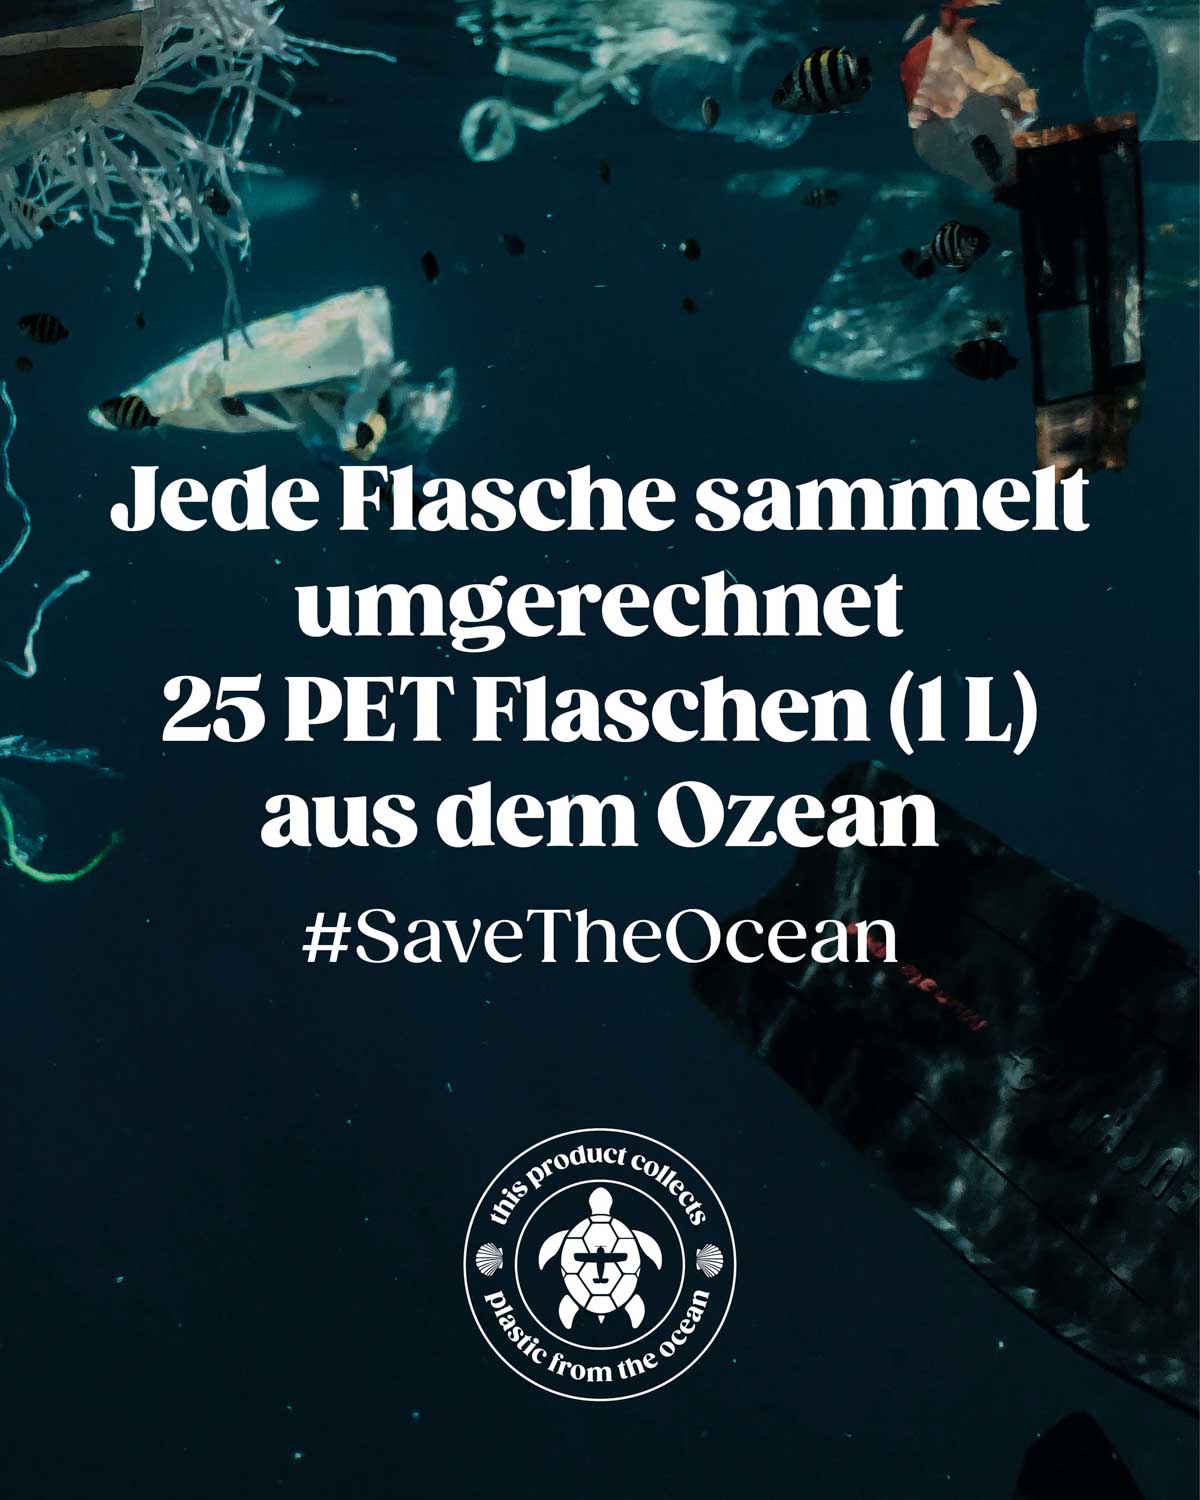 Zu sehen ist ein Unterwasser Bild von der Meeresverschmutzung durch Plastikmüll. Jede verkaufte BIRDS Flasche sammelt umgerechnet 25 PET Flaschen (1L) aus dem Ozean. Unser Hashtag lautet #savetheocean. Dies gelingt uns gemeinsam mit der Organisation Plastic Free Planet.  